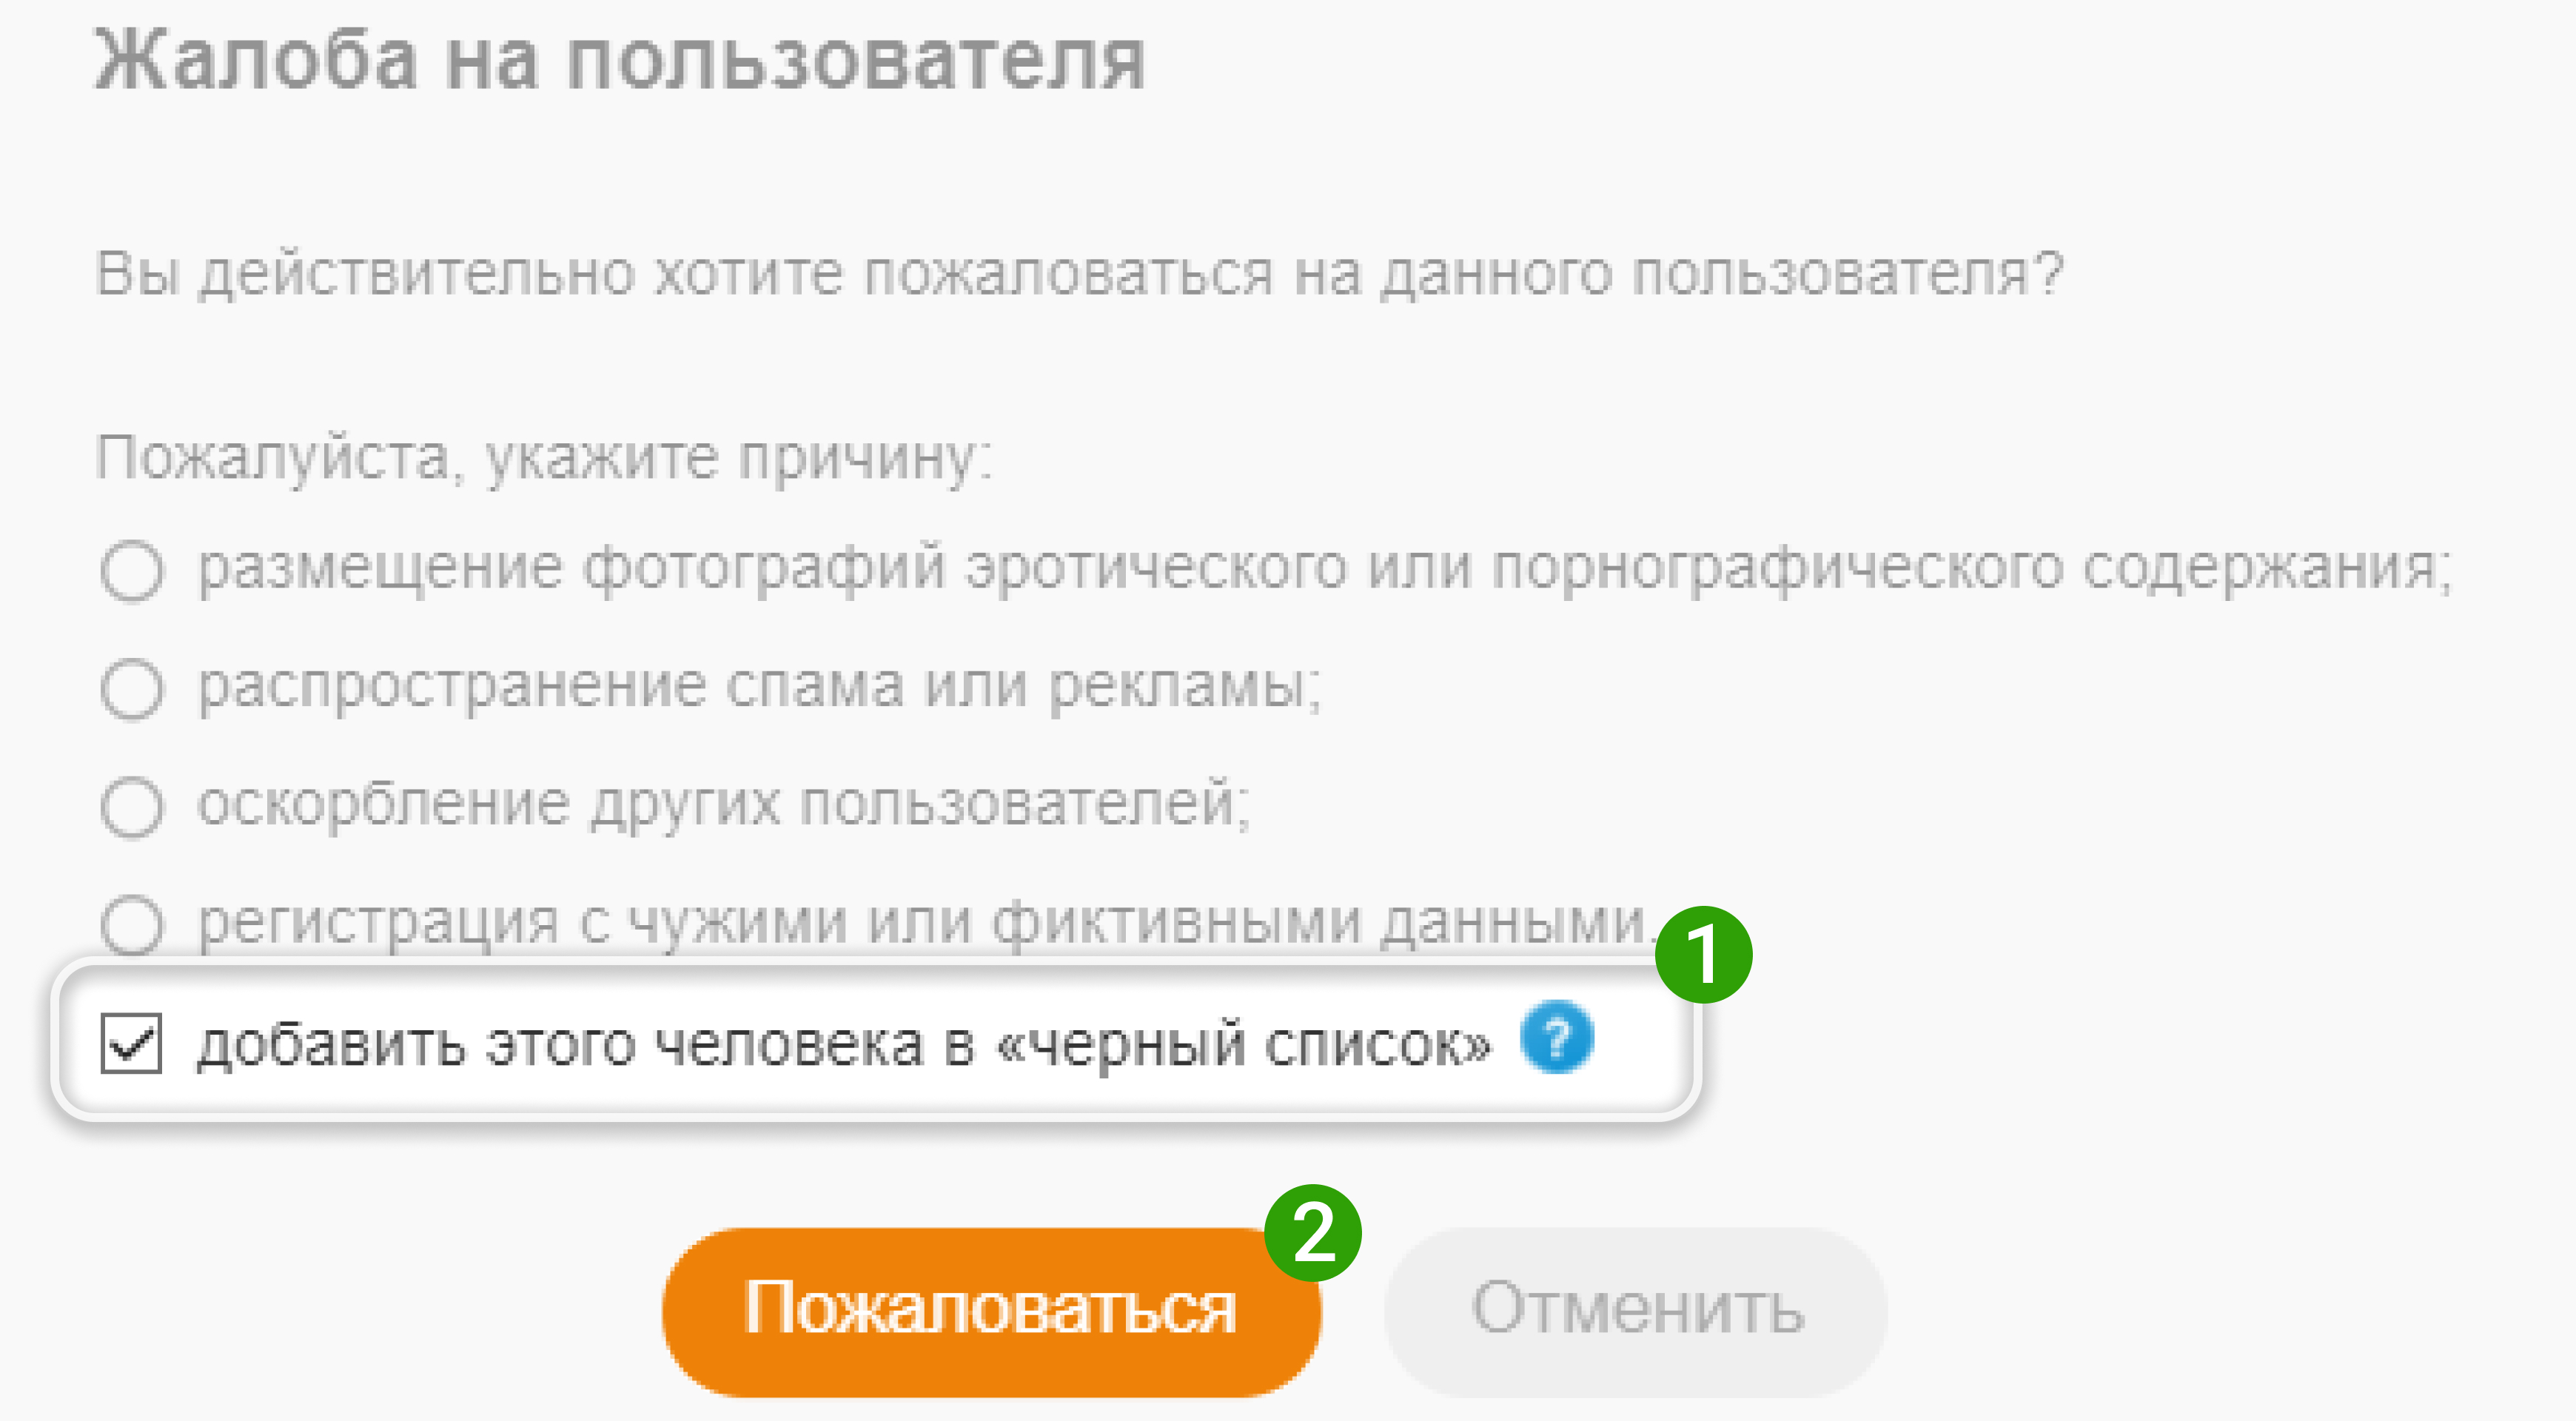 Что делать, если заблокировали страницу в Одноклассниках после взлома или отправки СПАМа?